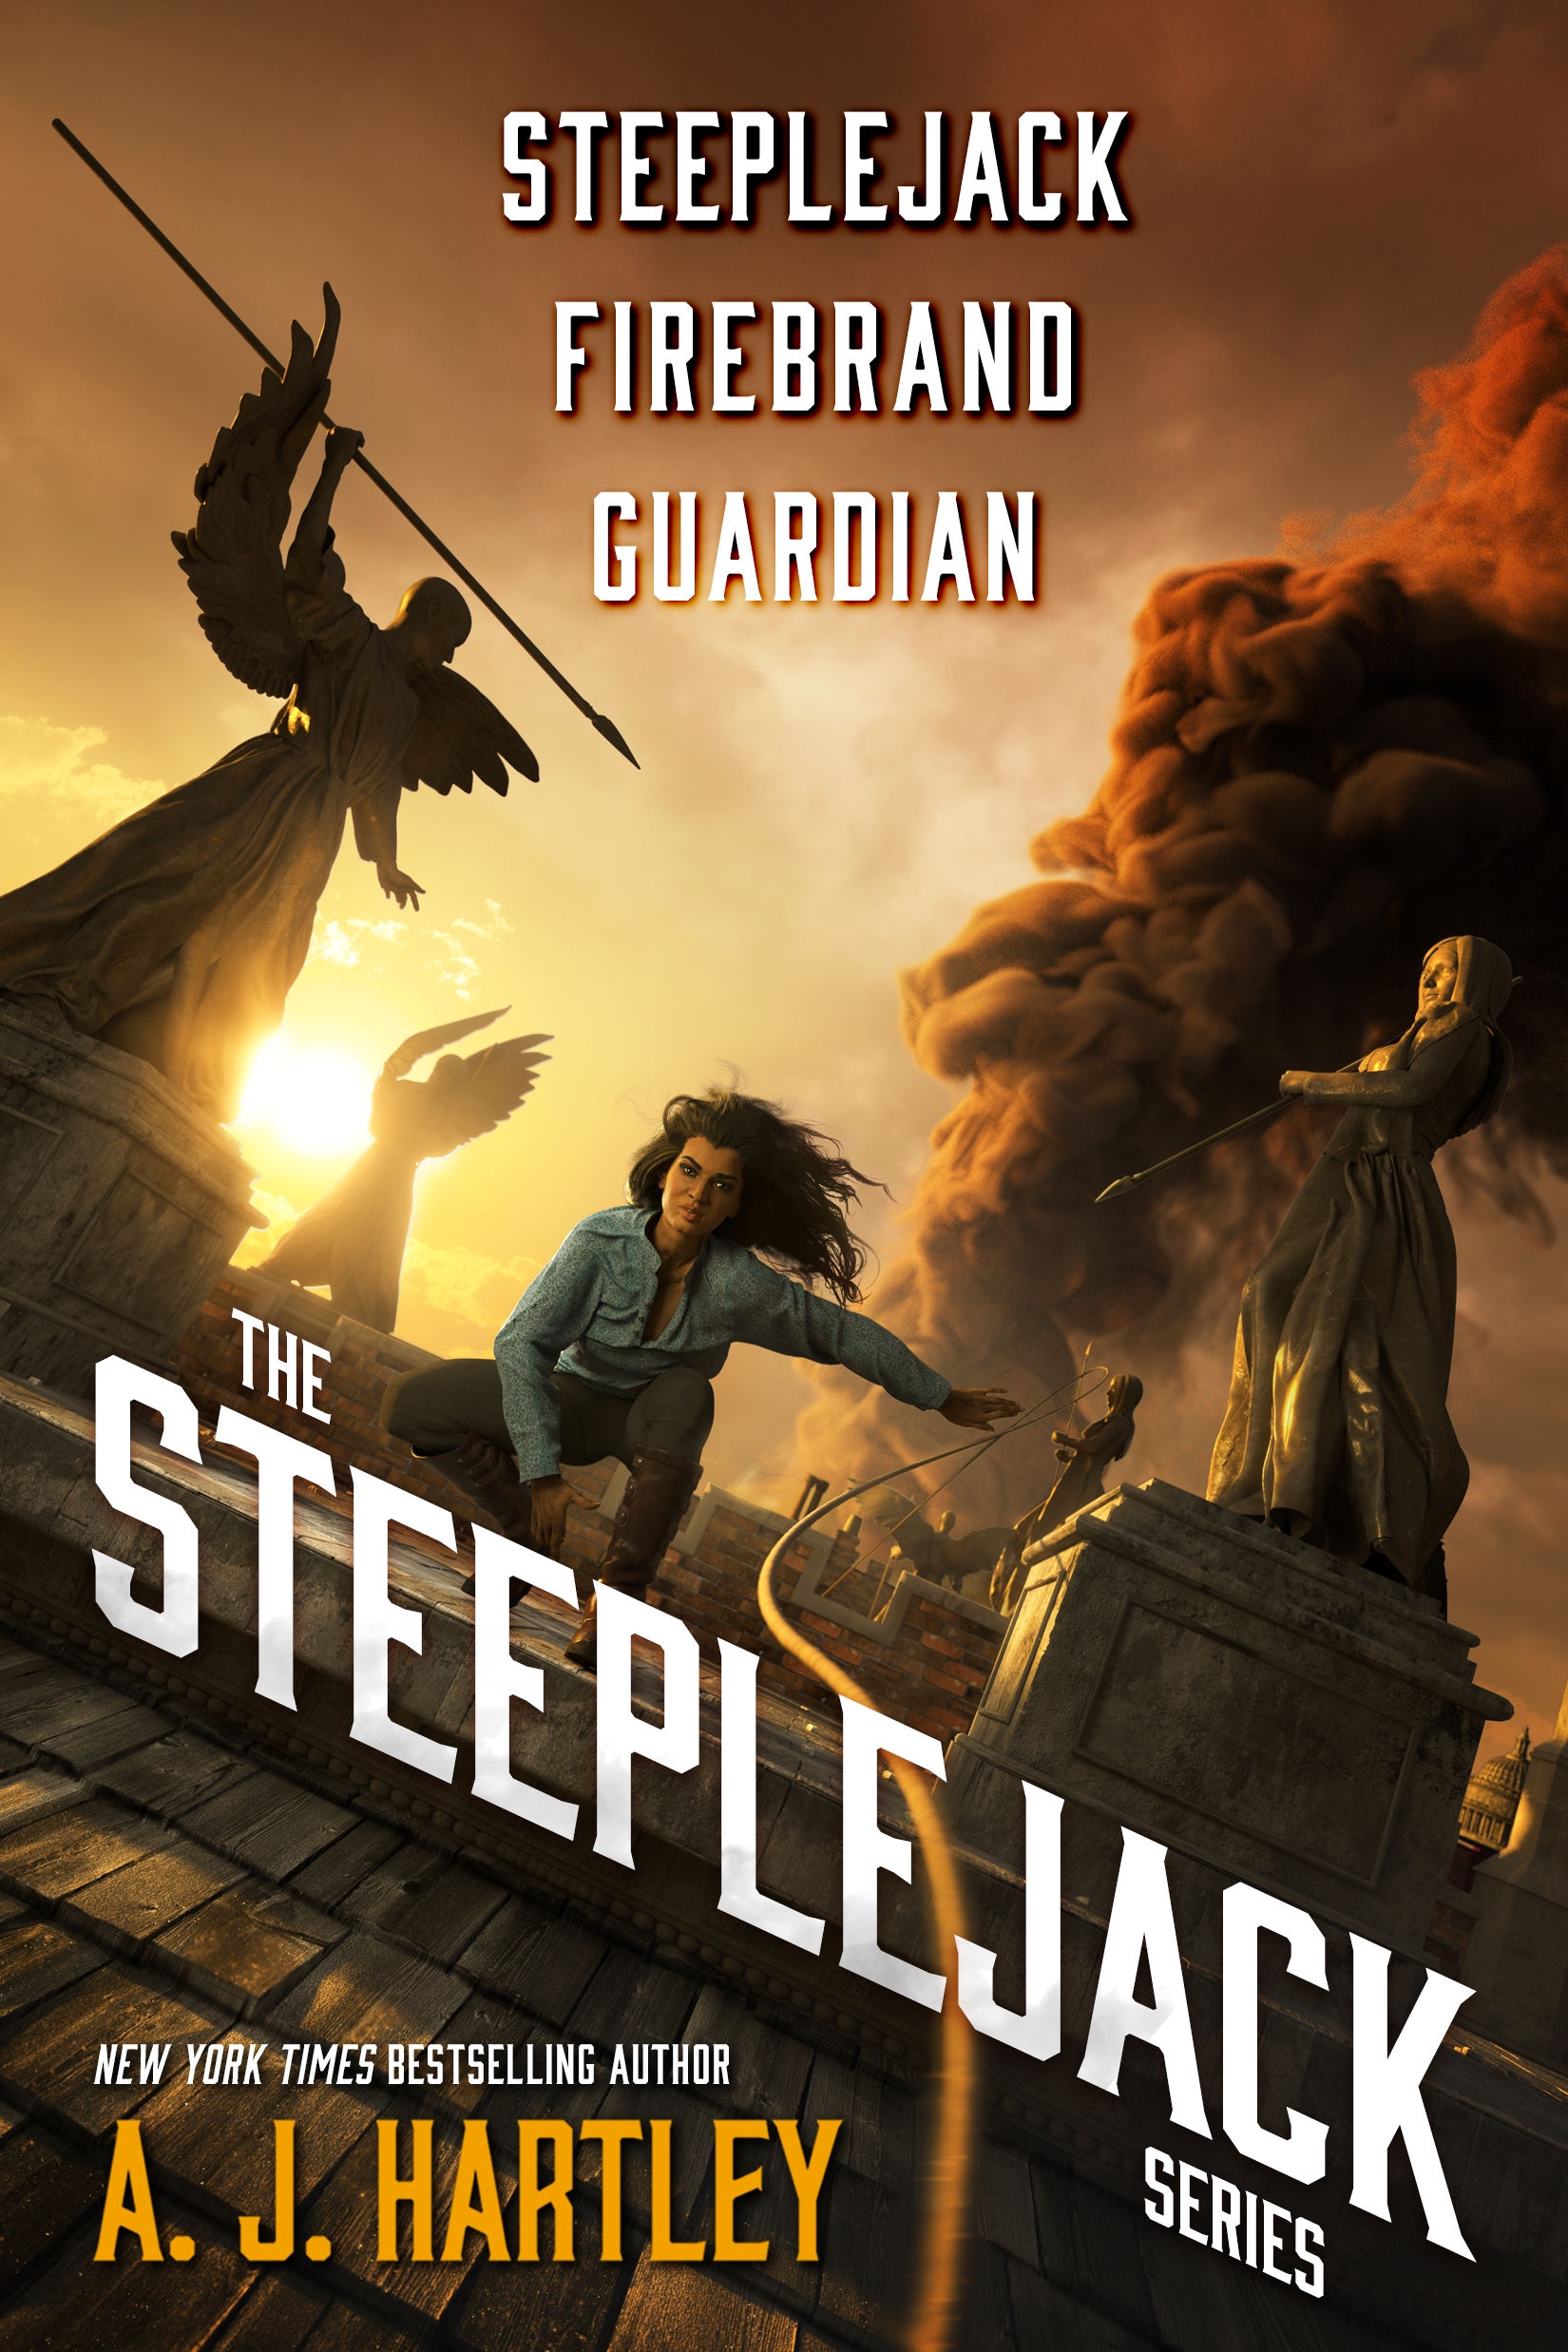 The Steeplejack Series : Steeplejack, Firebrand, Guardian by A. J. Hartley